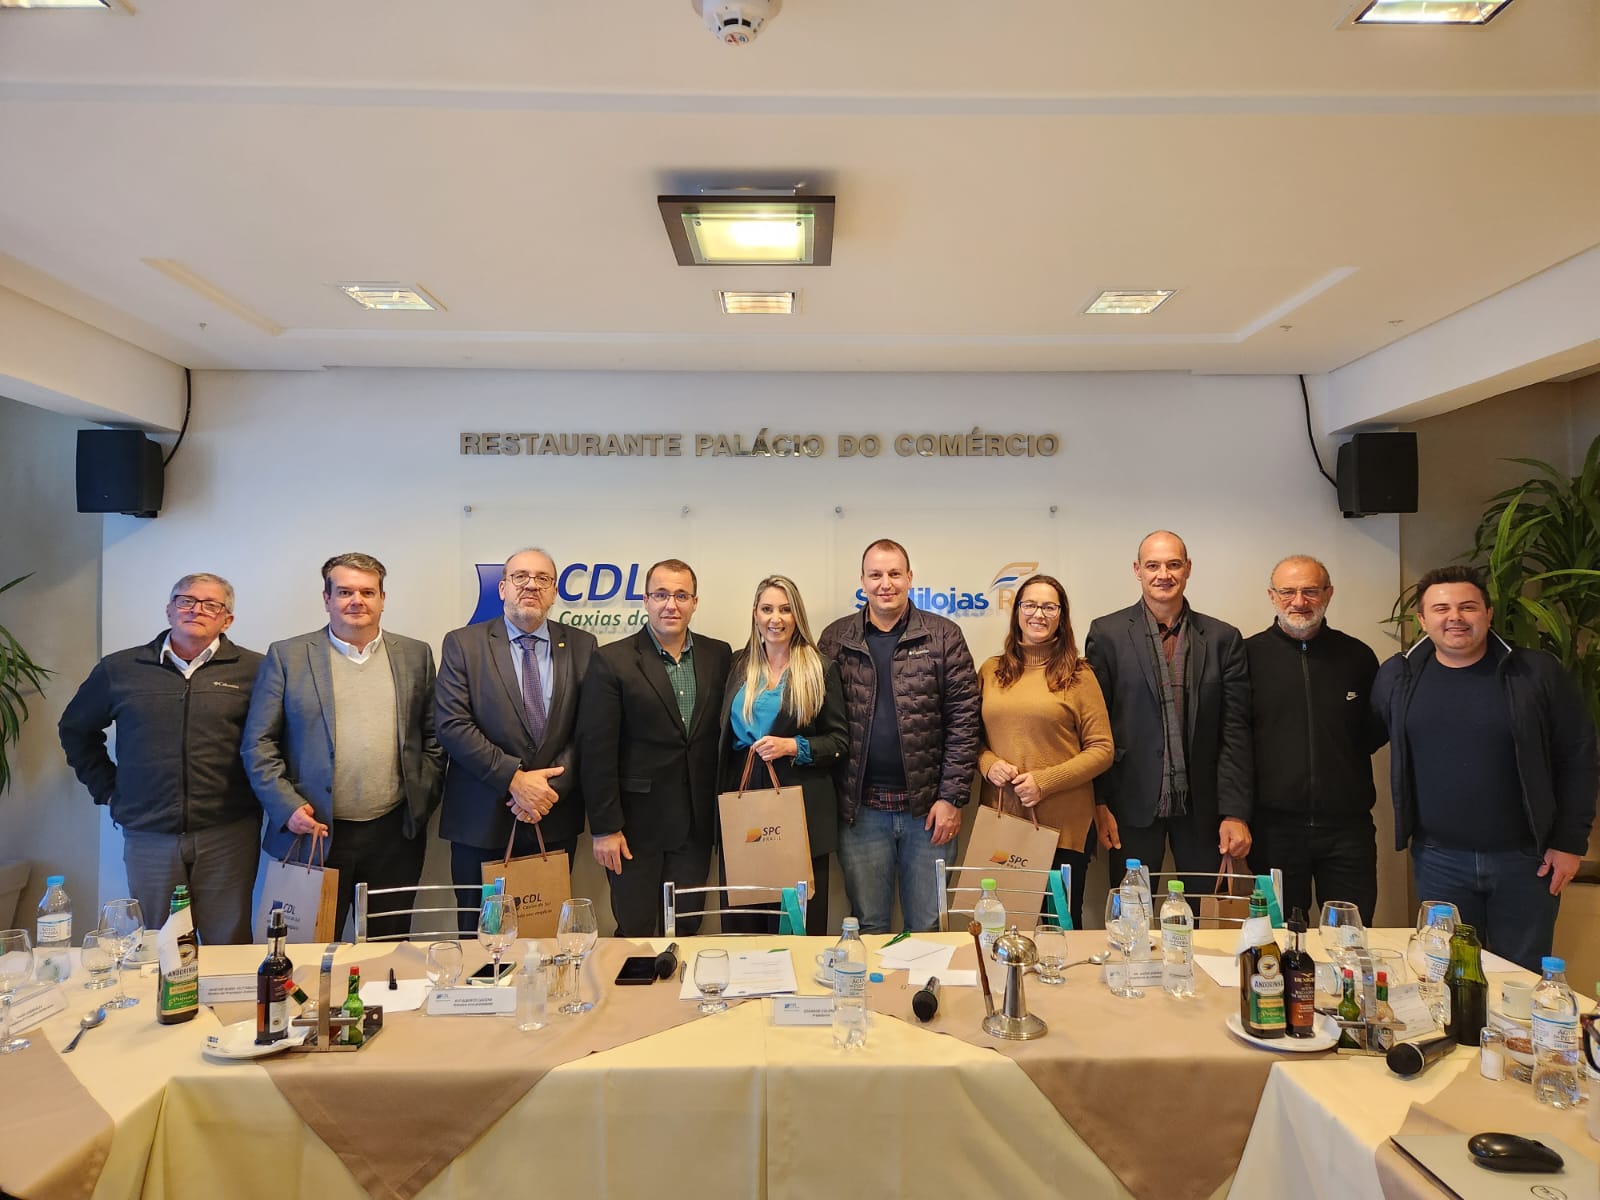 Unimed Nordeste-RS apresenta parceria com CDL Caxias do Sul em reunião-almoço